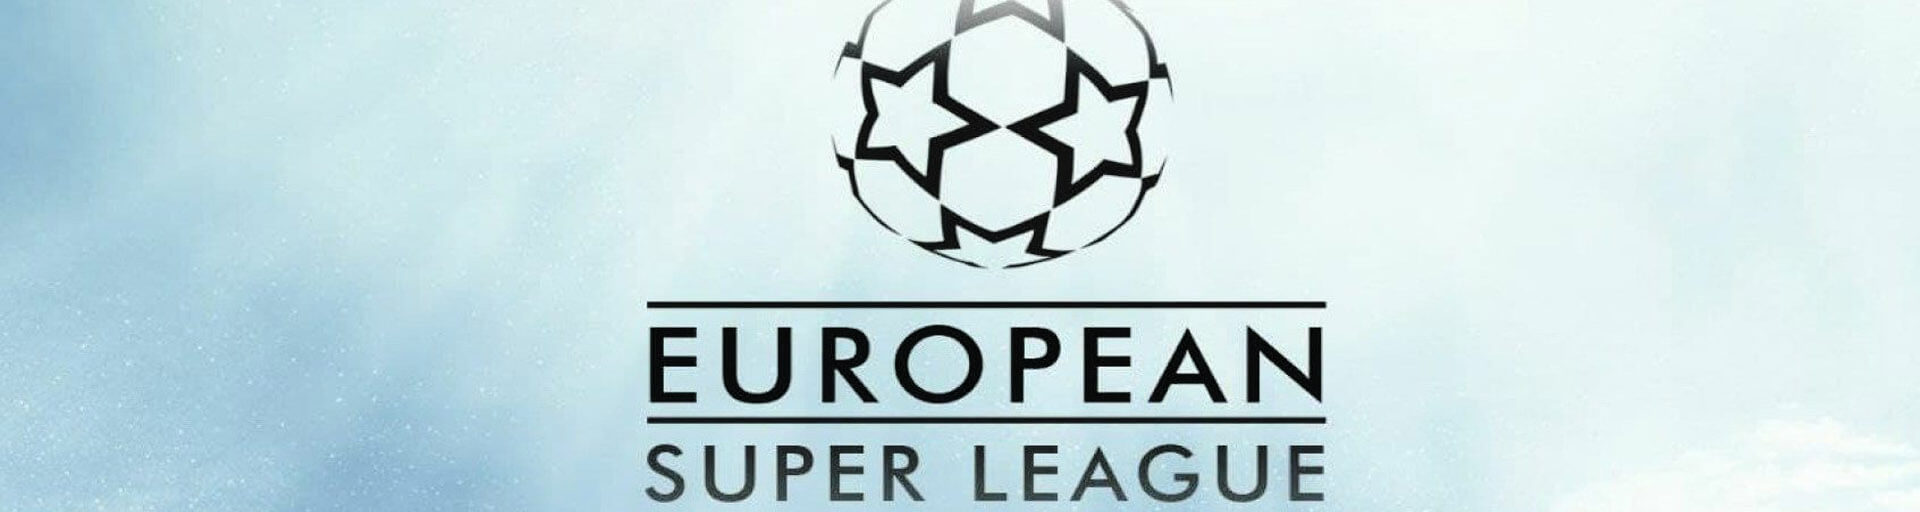 Европейская футбольная Суперлига